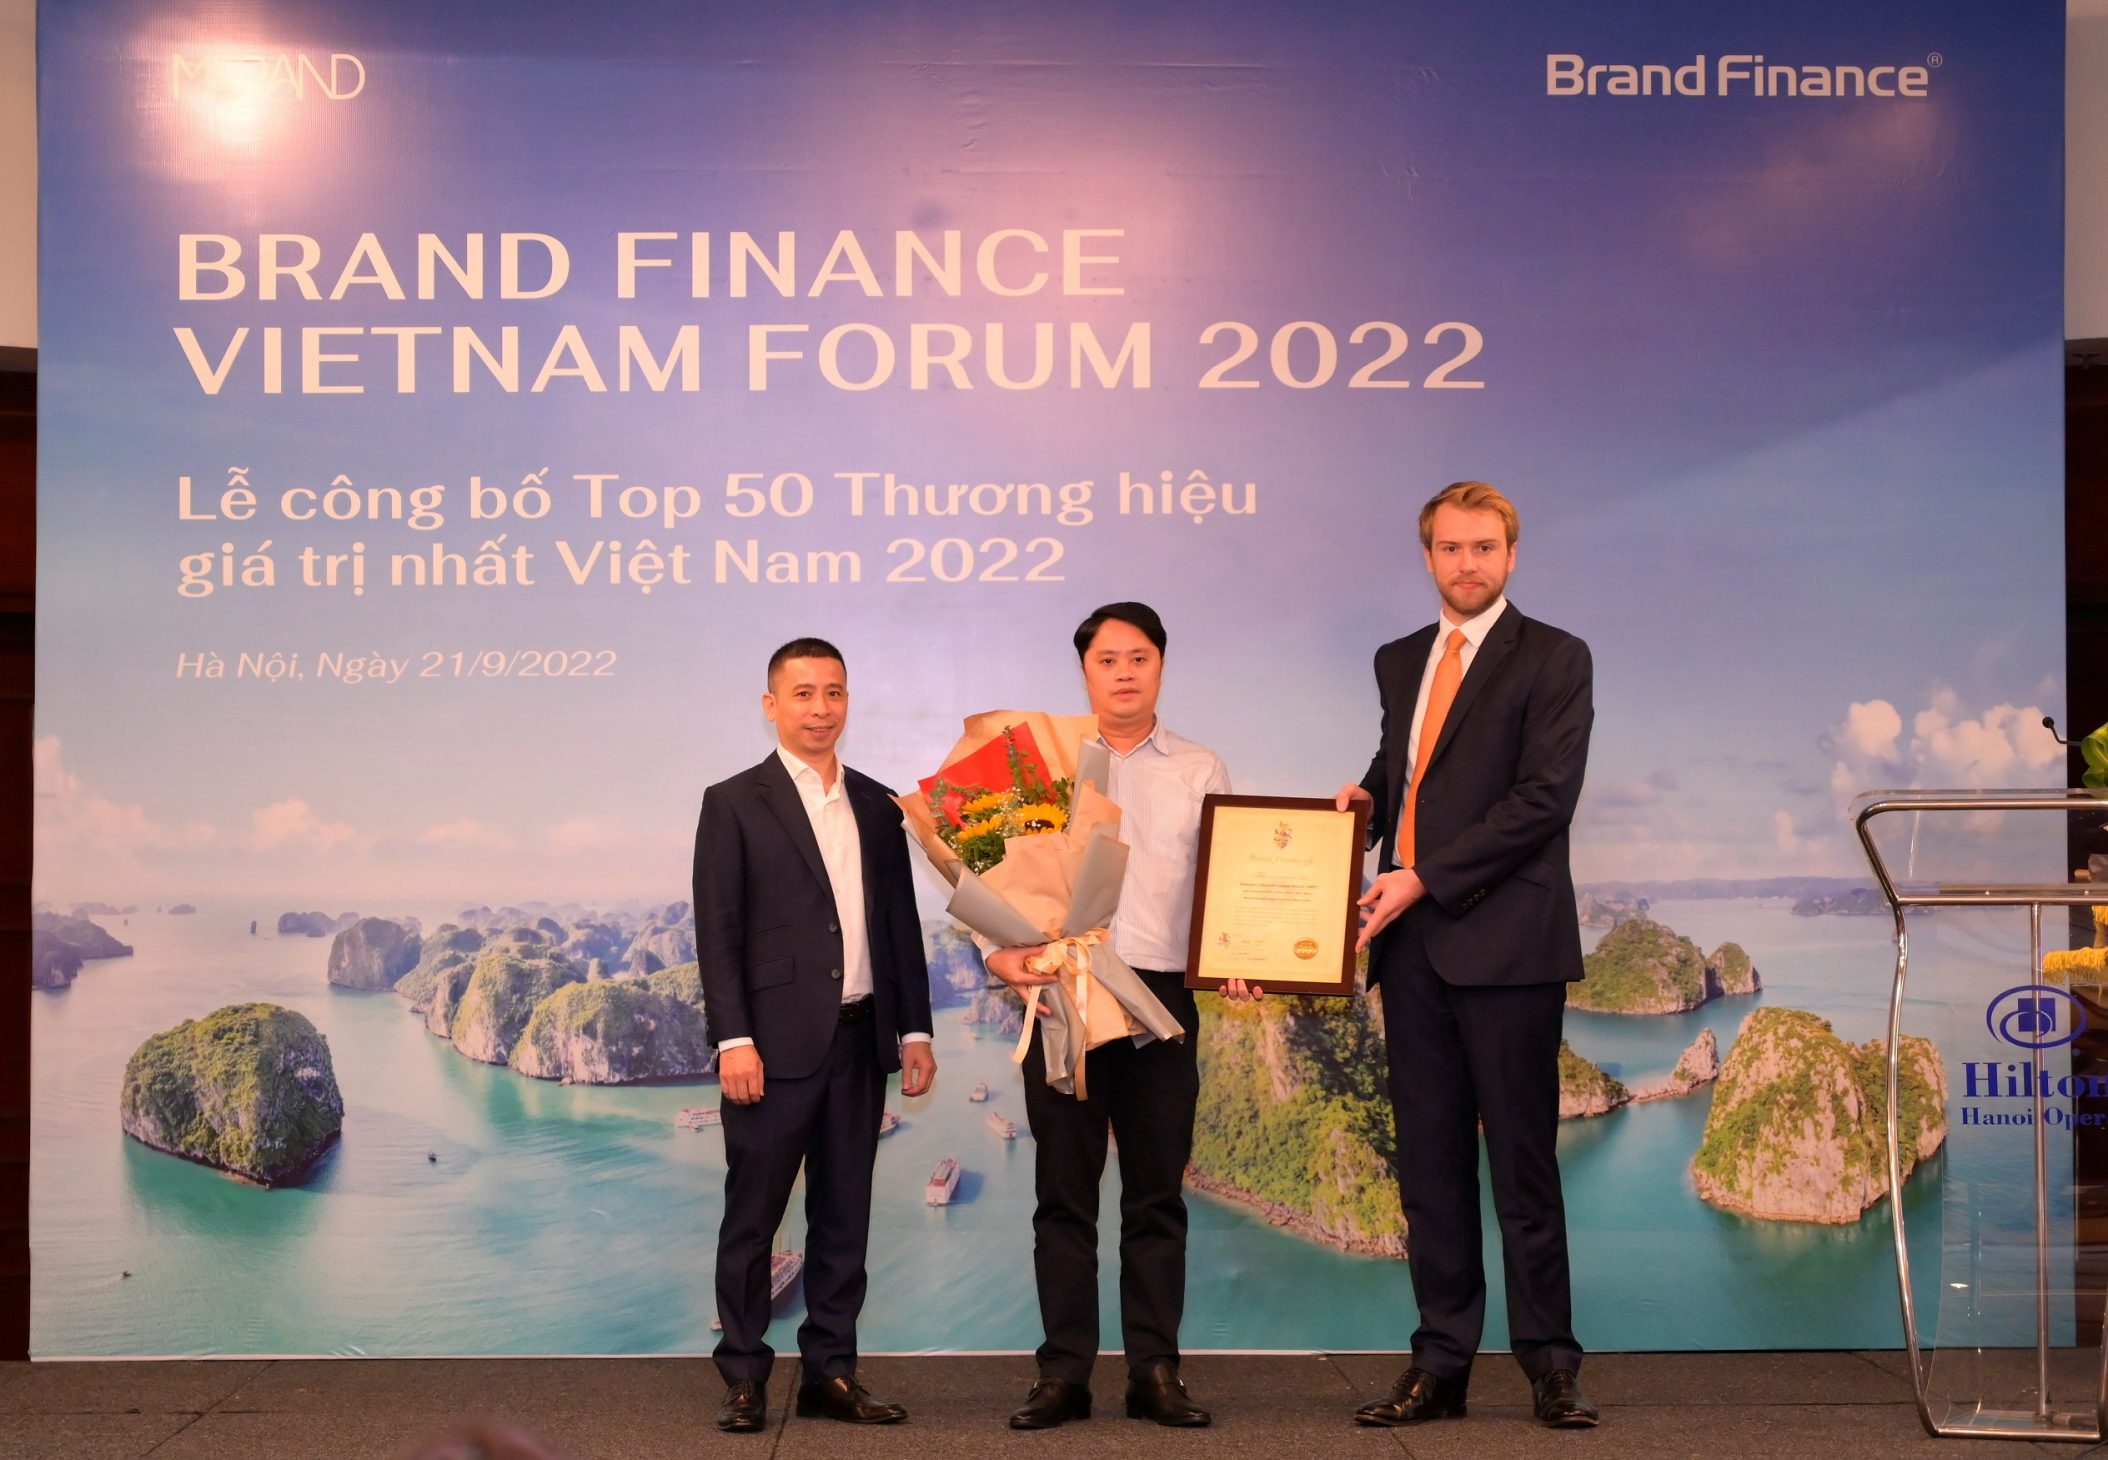 2 tập đoàn viễn thông chiếm vị trí nhất nhì của 50 thương hiệu giá trị nhất Việt Nam - Dai dien Tap doan VNPT nhan giay Chung nhan gia tri thuong hieu